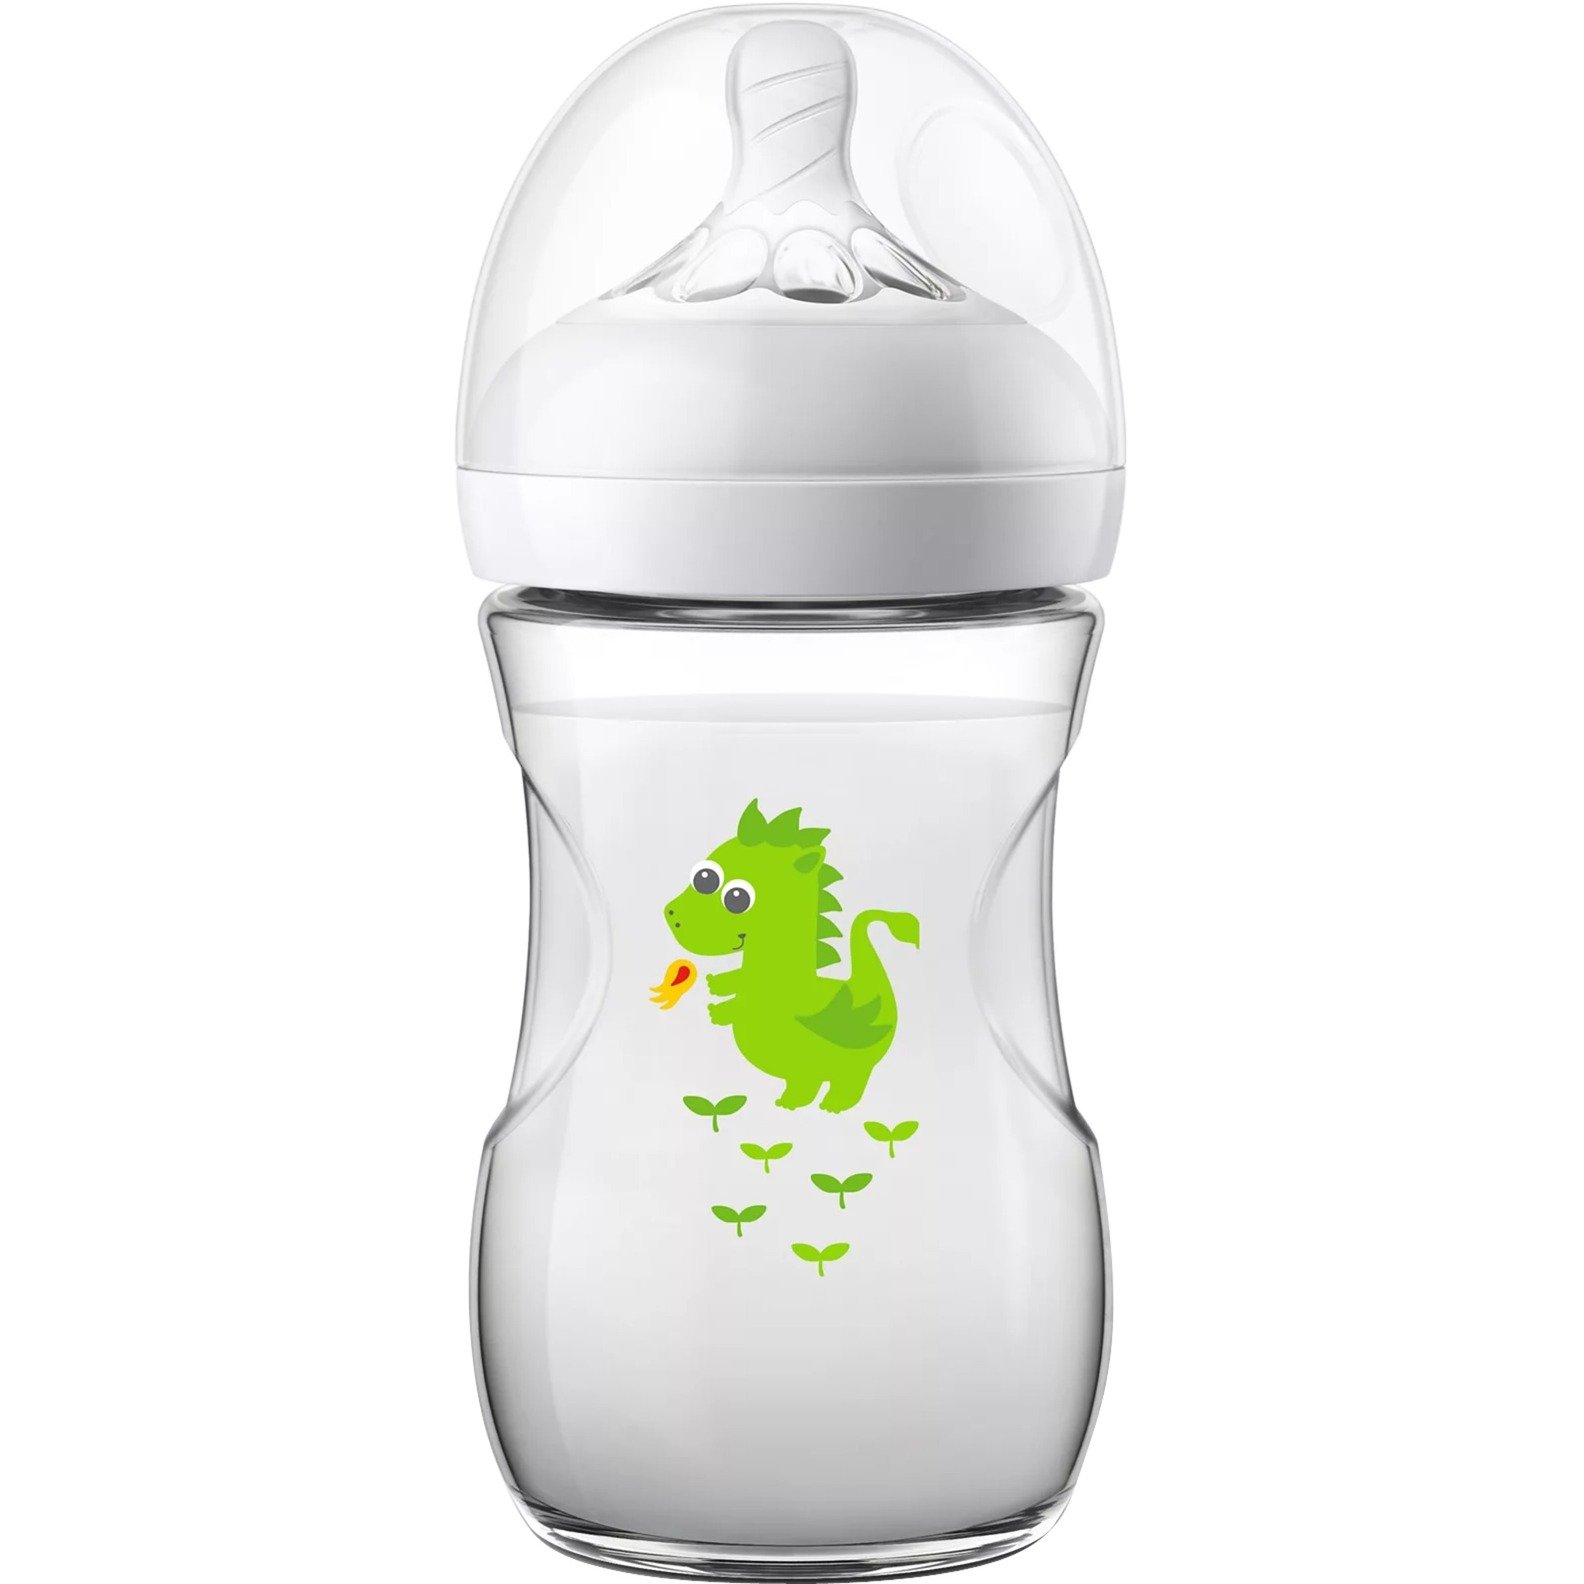 Image of Alternate - Avent SCF070/24 Natural-Babyflasche online einkaufen bei Alternate